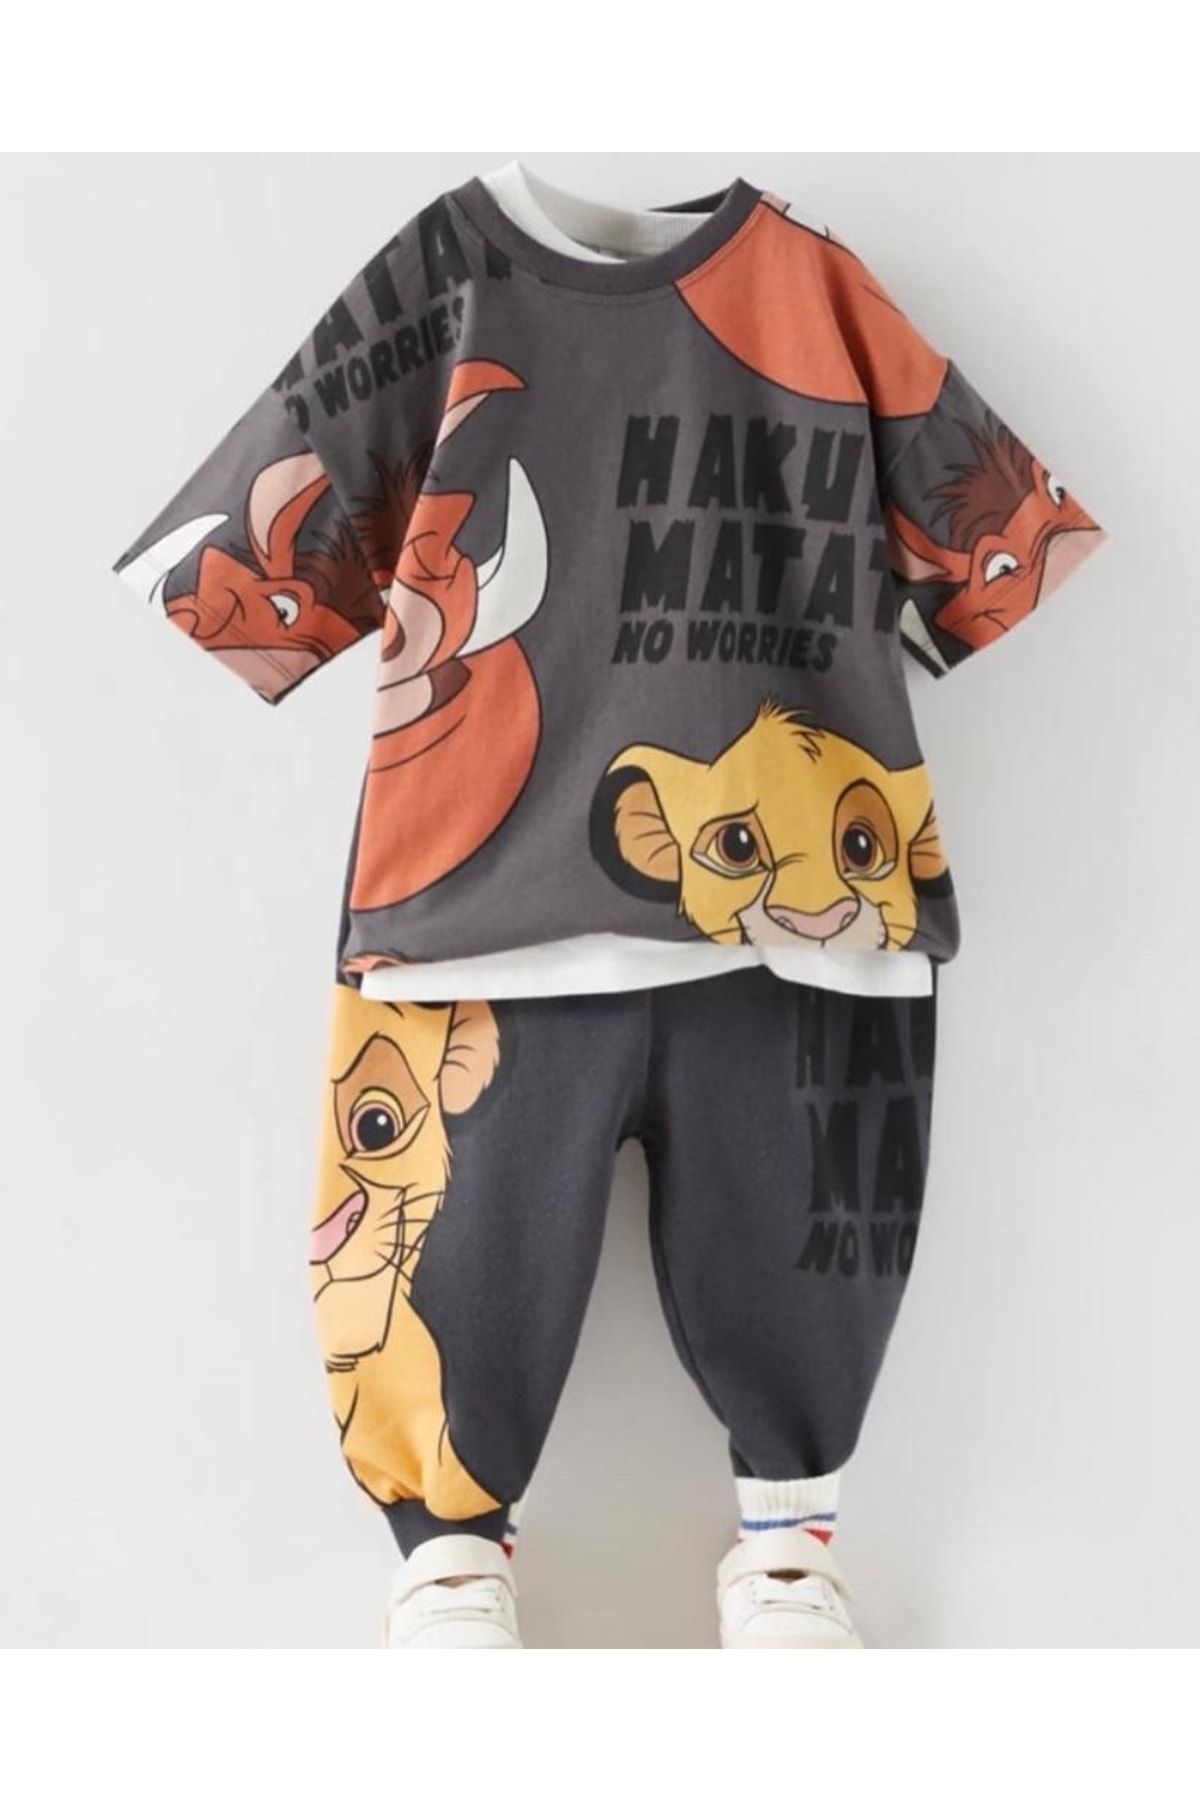 BELLA&MODA Lion Erkek Çocuk Pijama Ve Tişört Kombin, Aslan Kral Baskılı Yeni Sezon Erkek Çocuk Eşofman Takımı